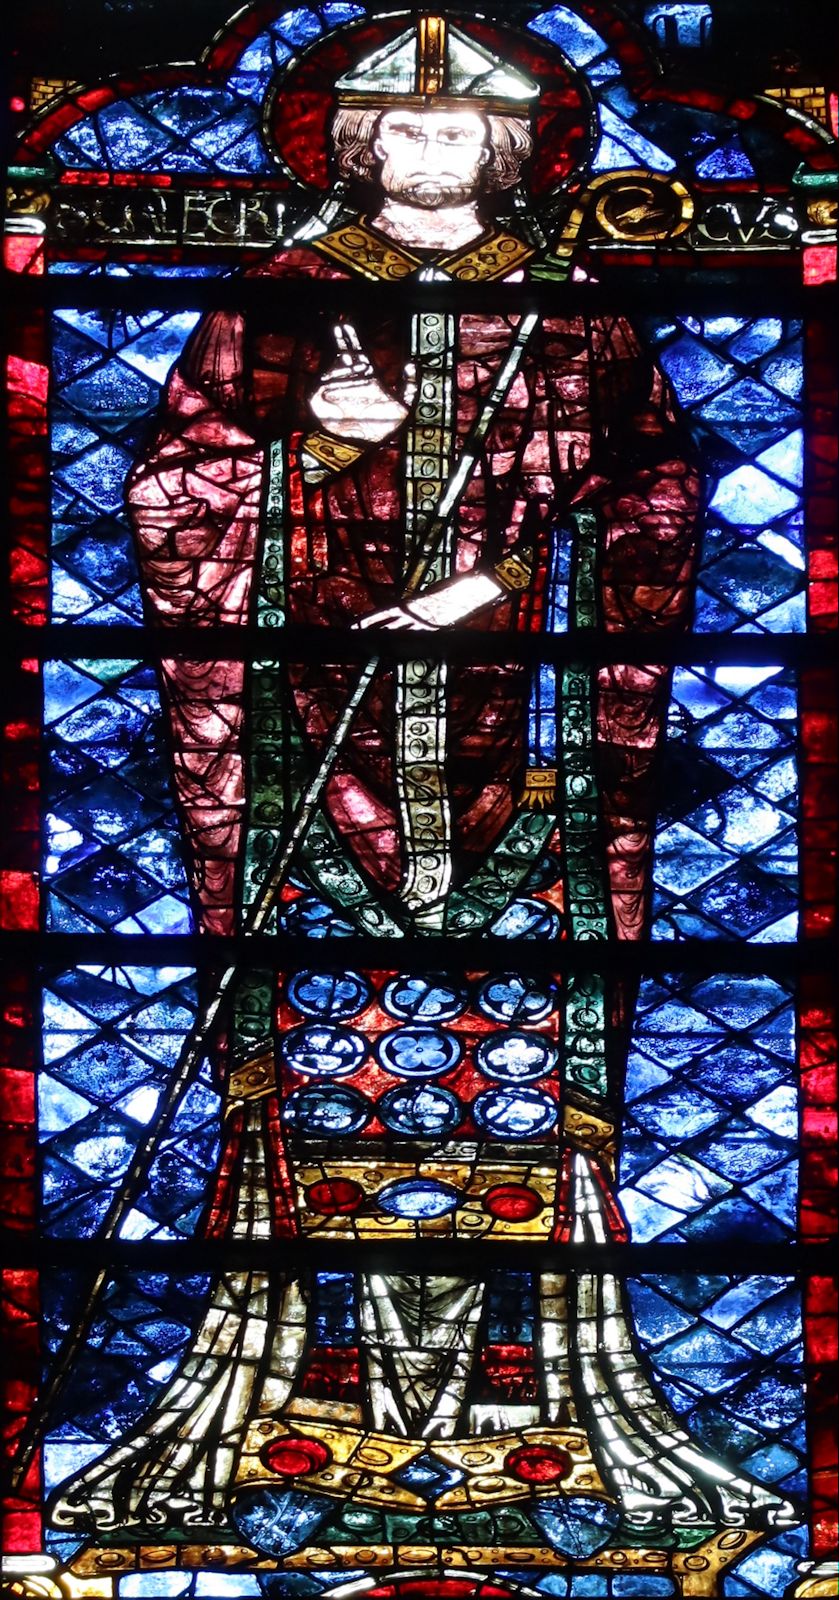 Bleiglasfenster, um 1210, in der Kathedrale in Chartres